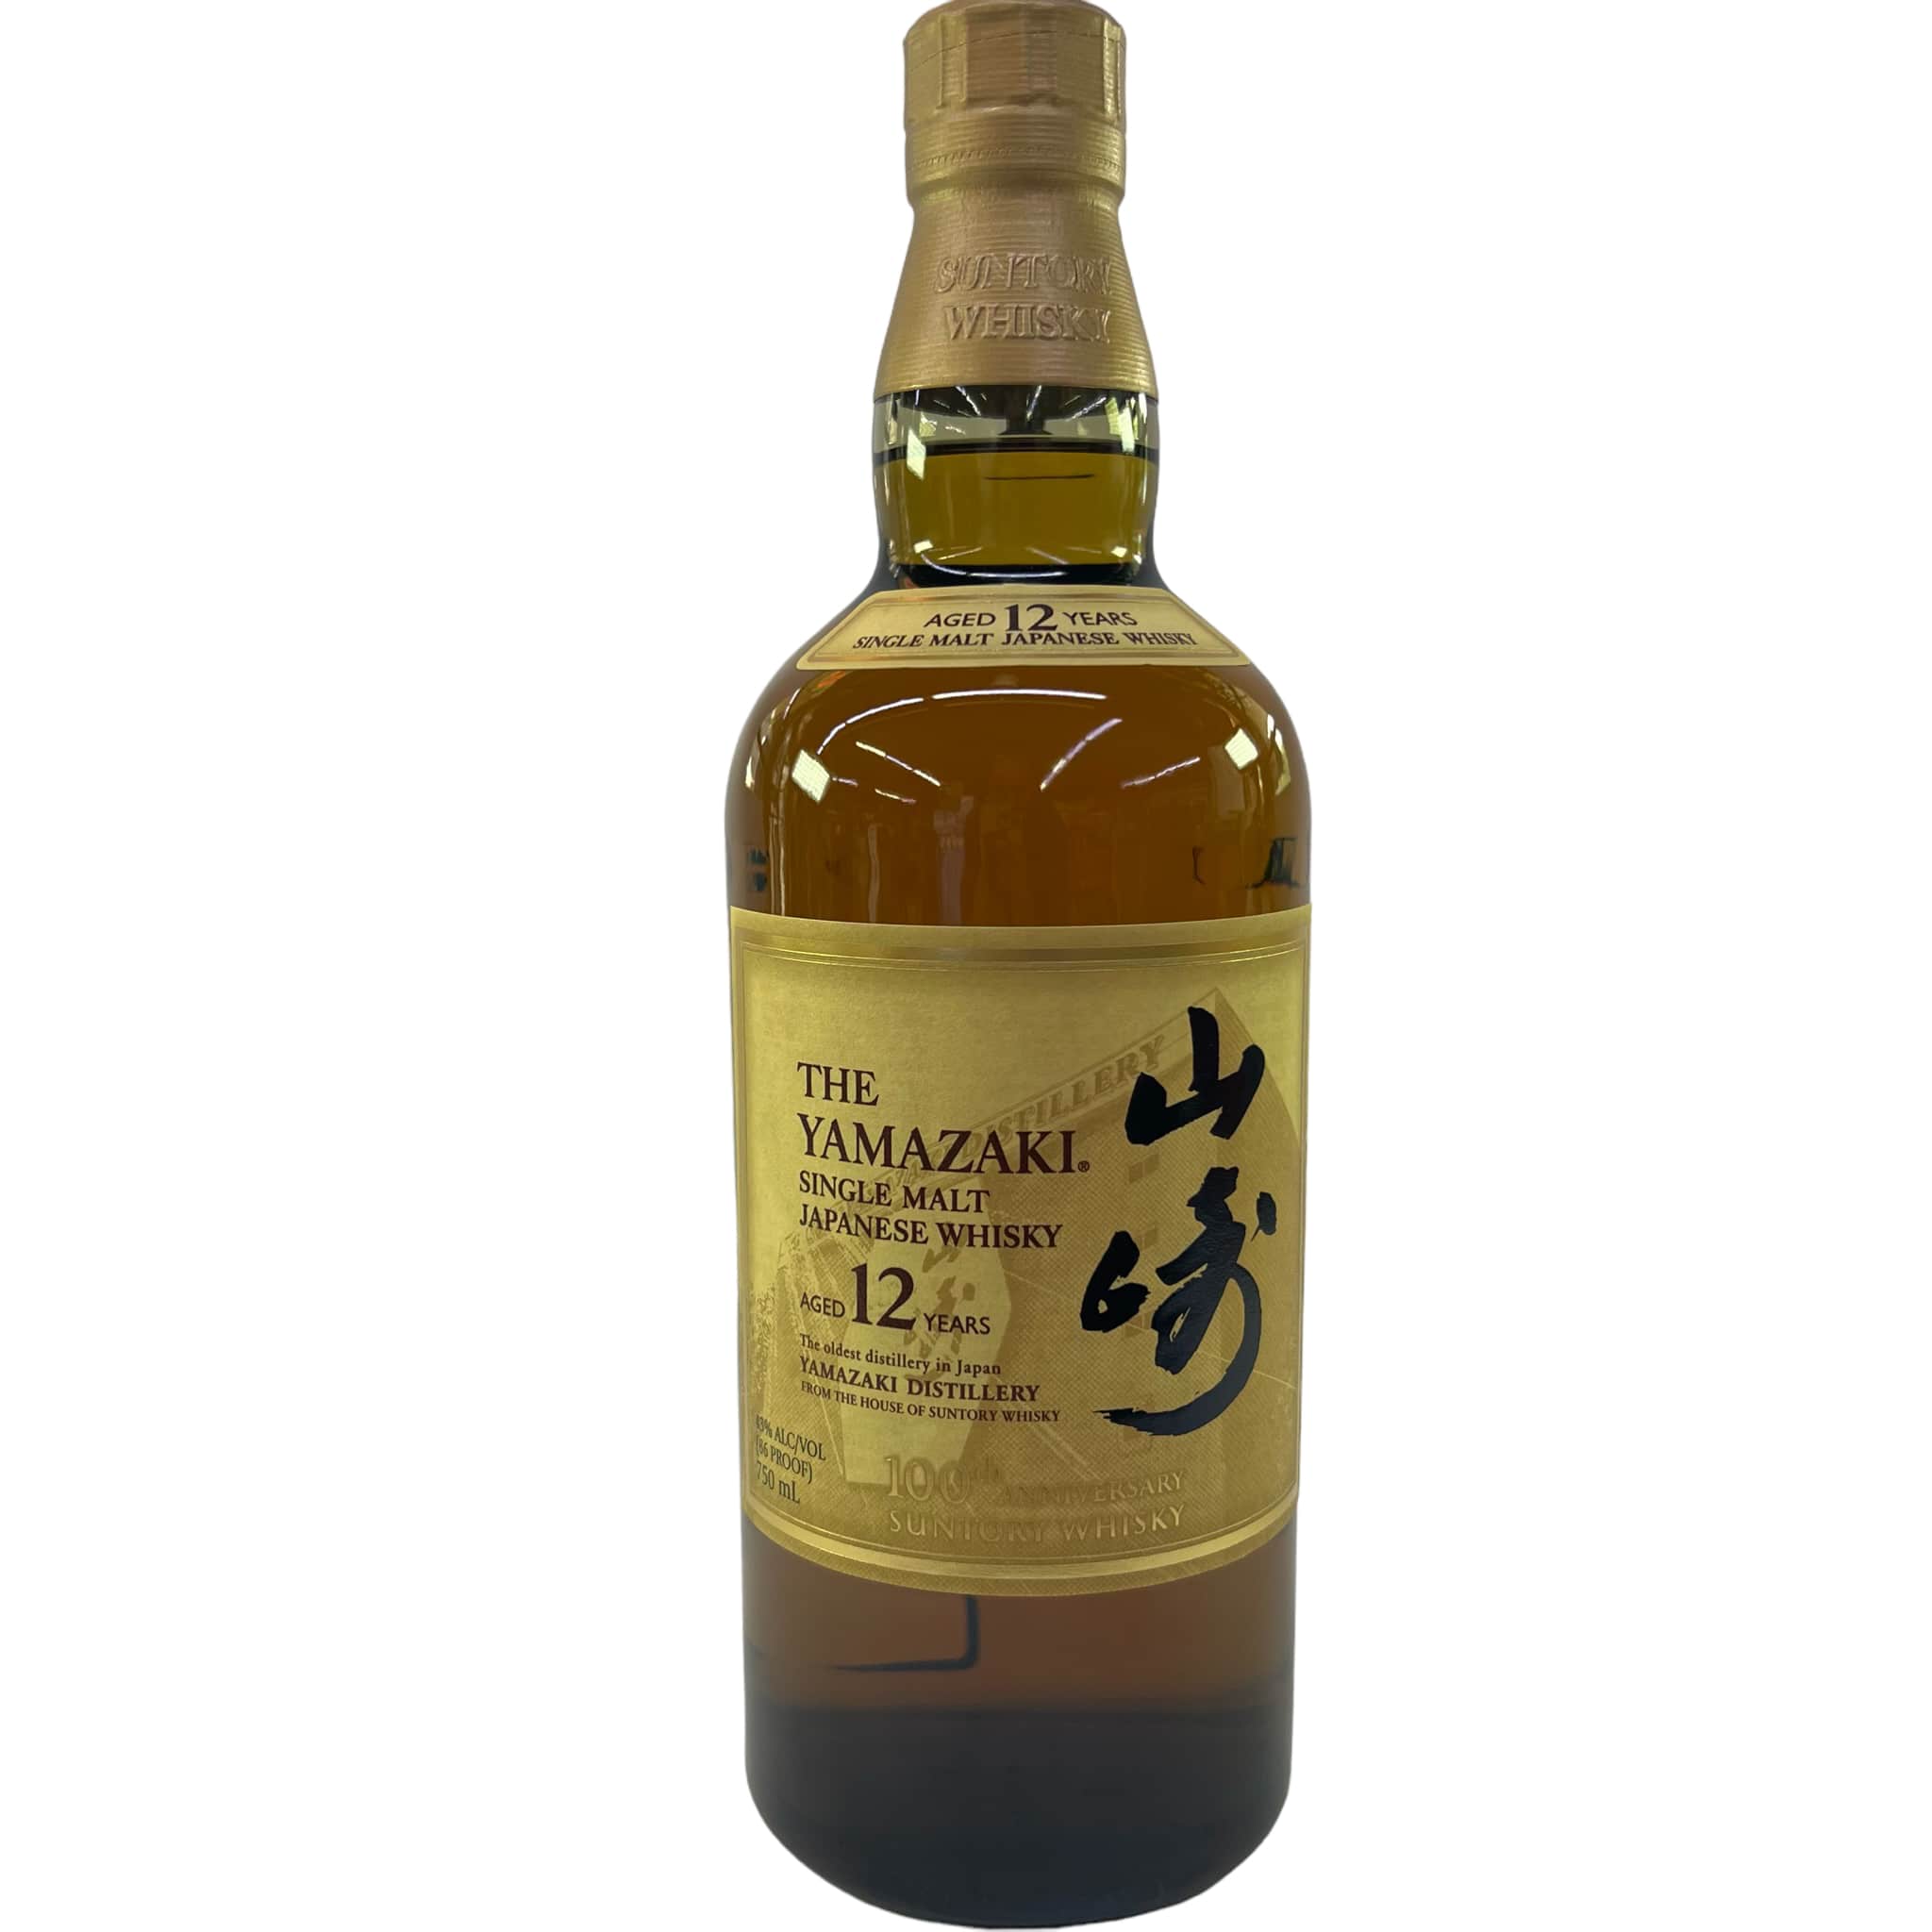 The Yamazaki Single Malt Japanese Whisky, Aged 12 Years, 750ml